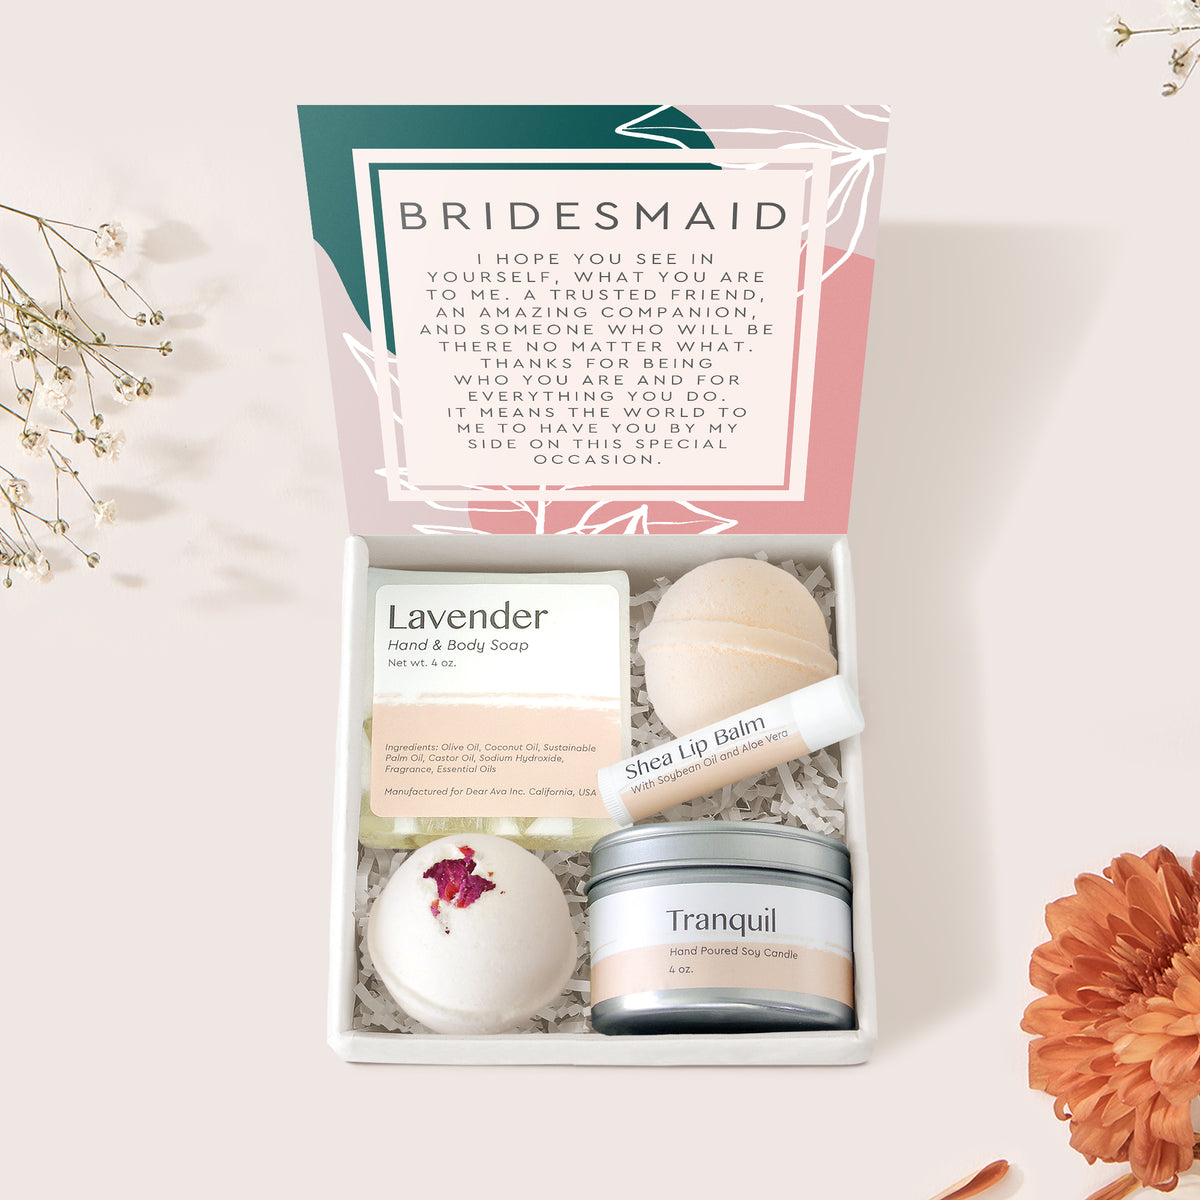 Bridesmaids Spa Gift Box